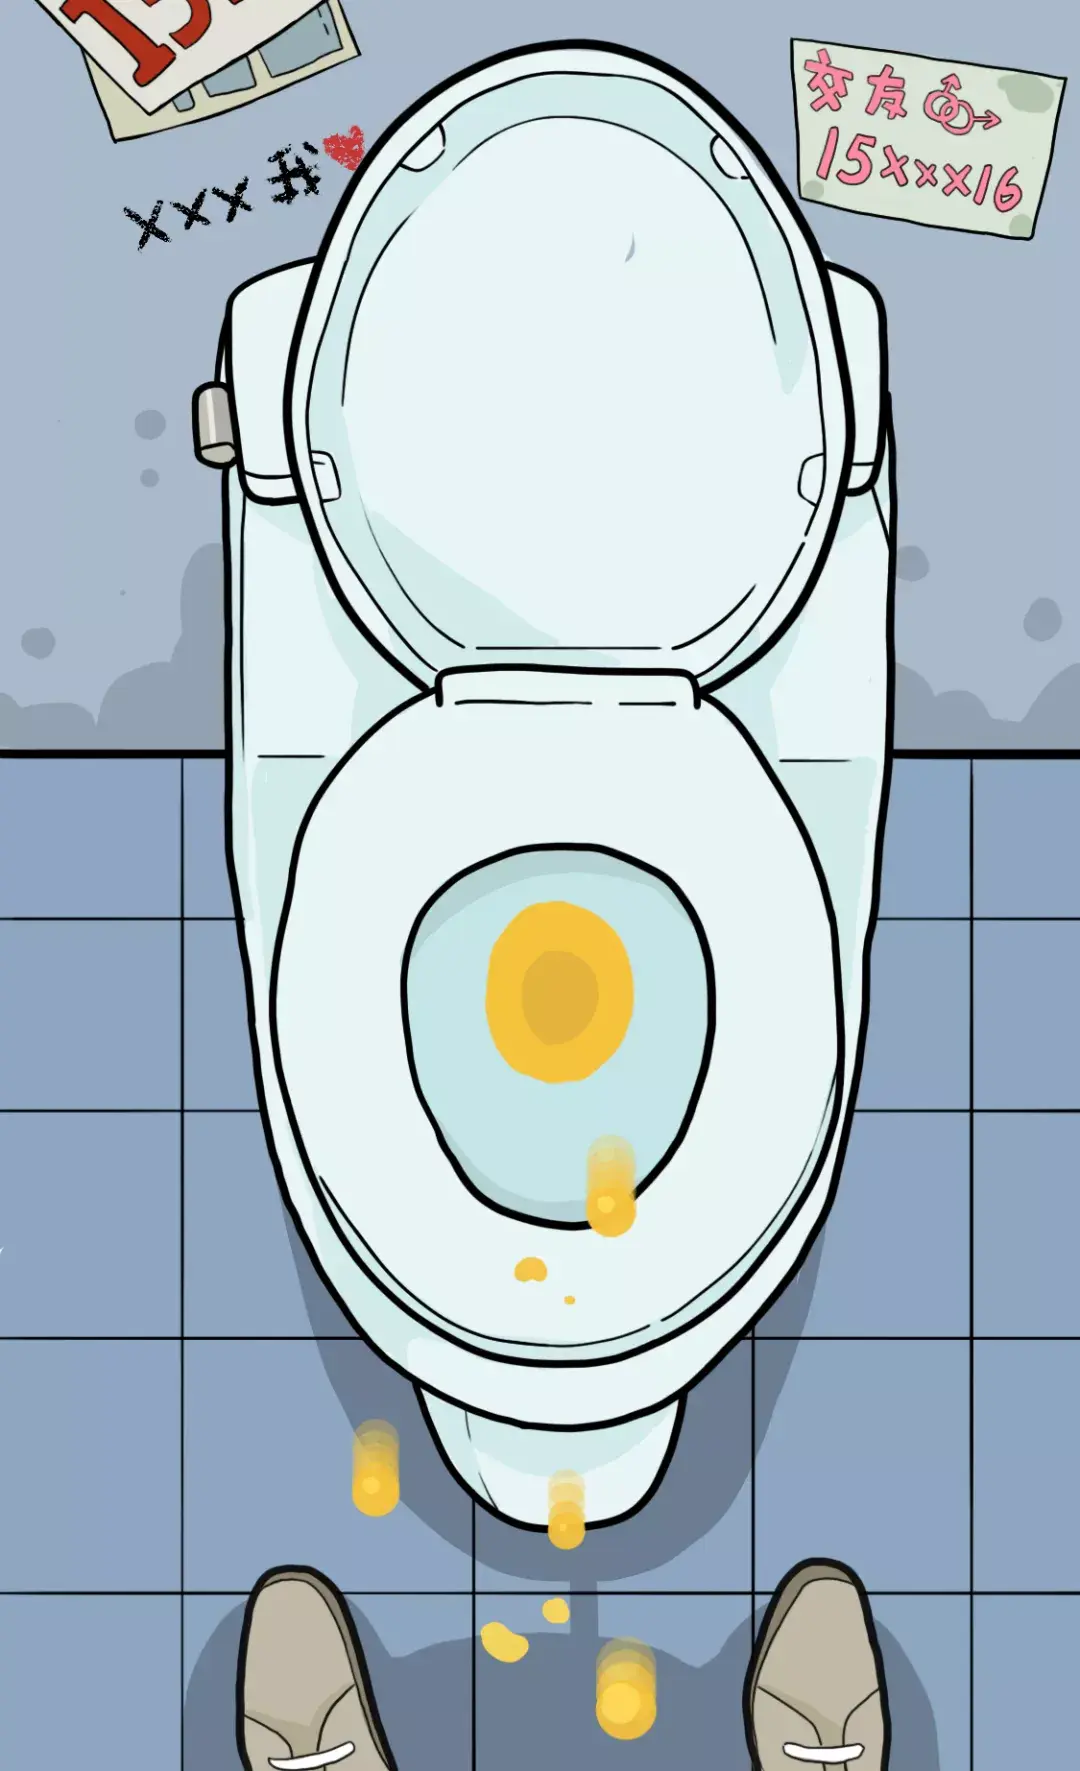 【沙雕设计第一期】撒尿正确姿势！这厕所是给人用吗？哈哈哈_哔哩哔哩_bilibili